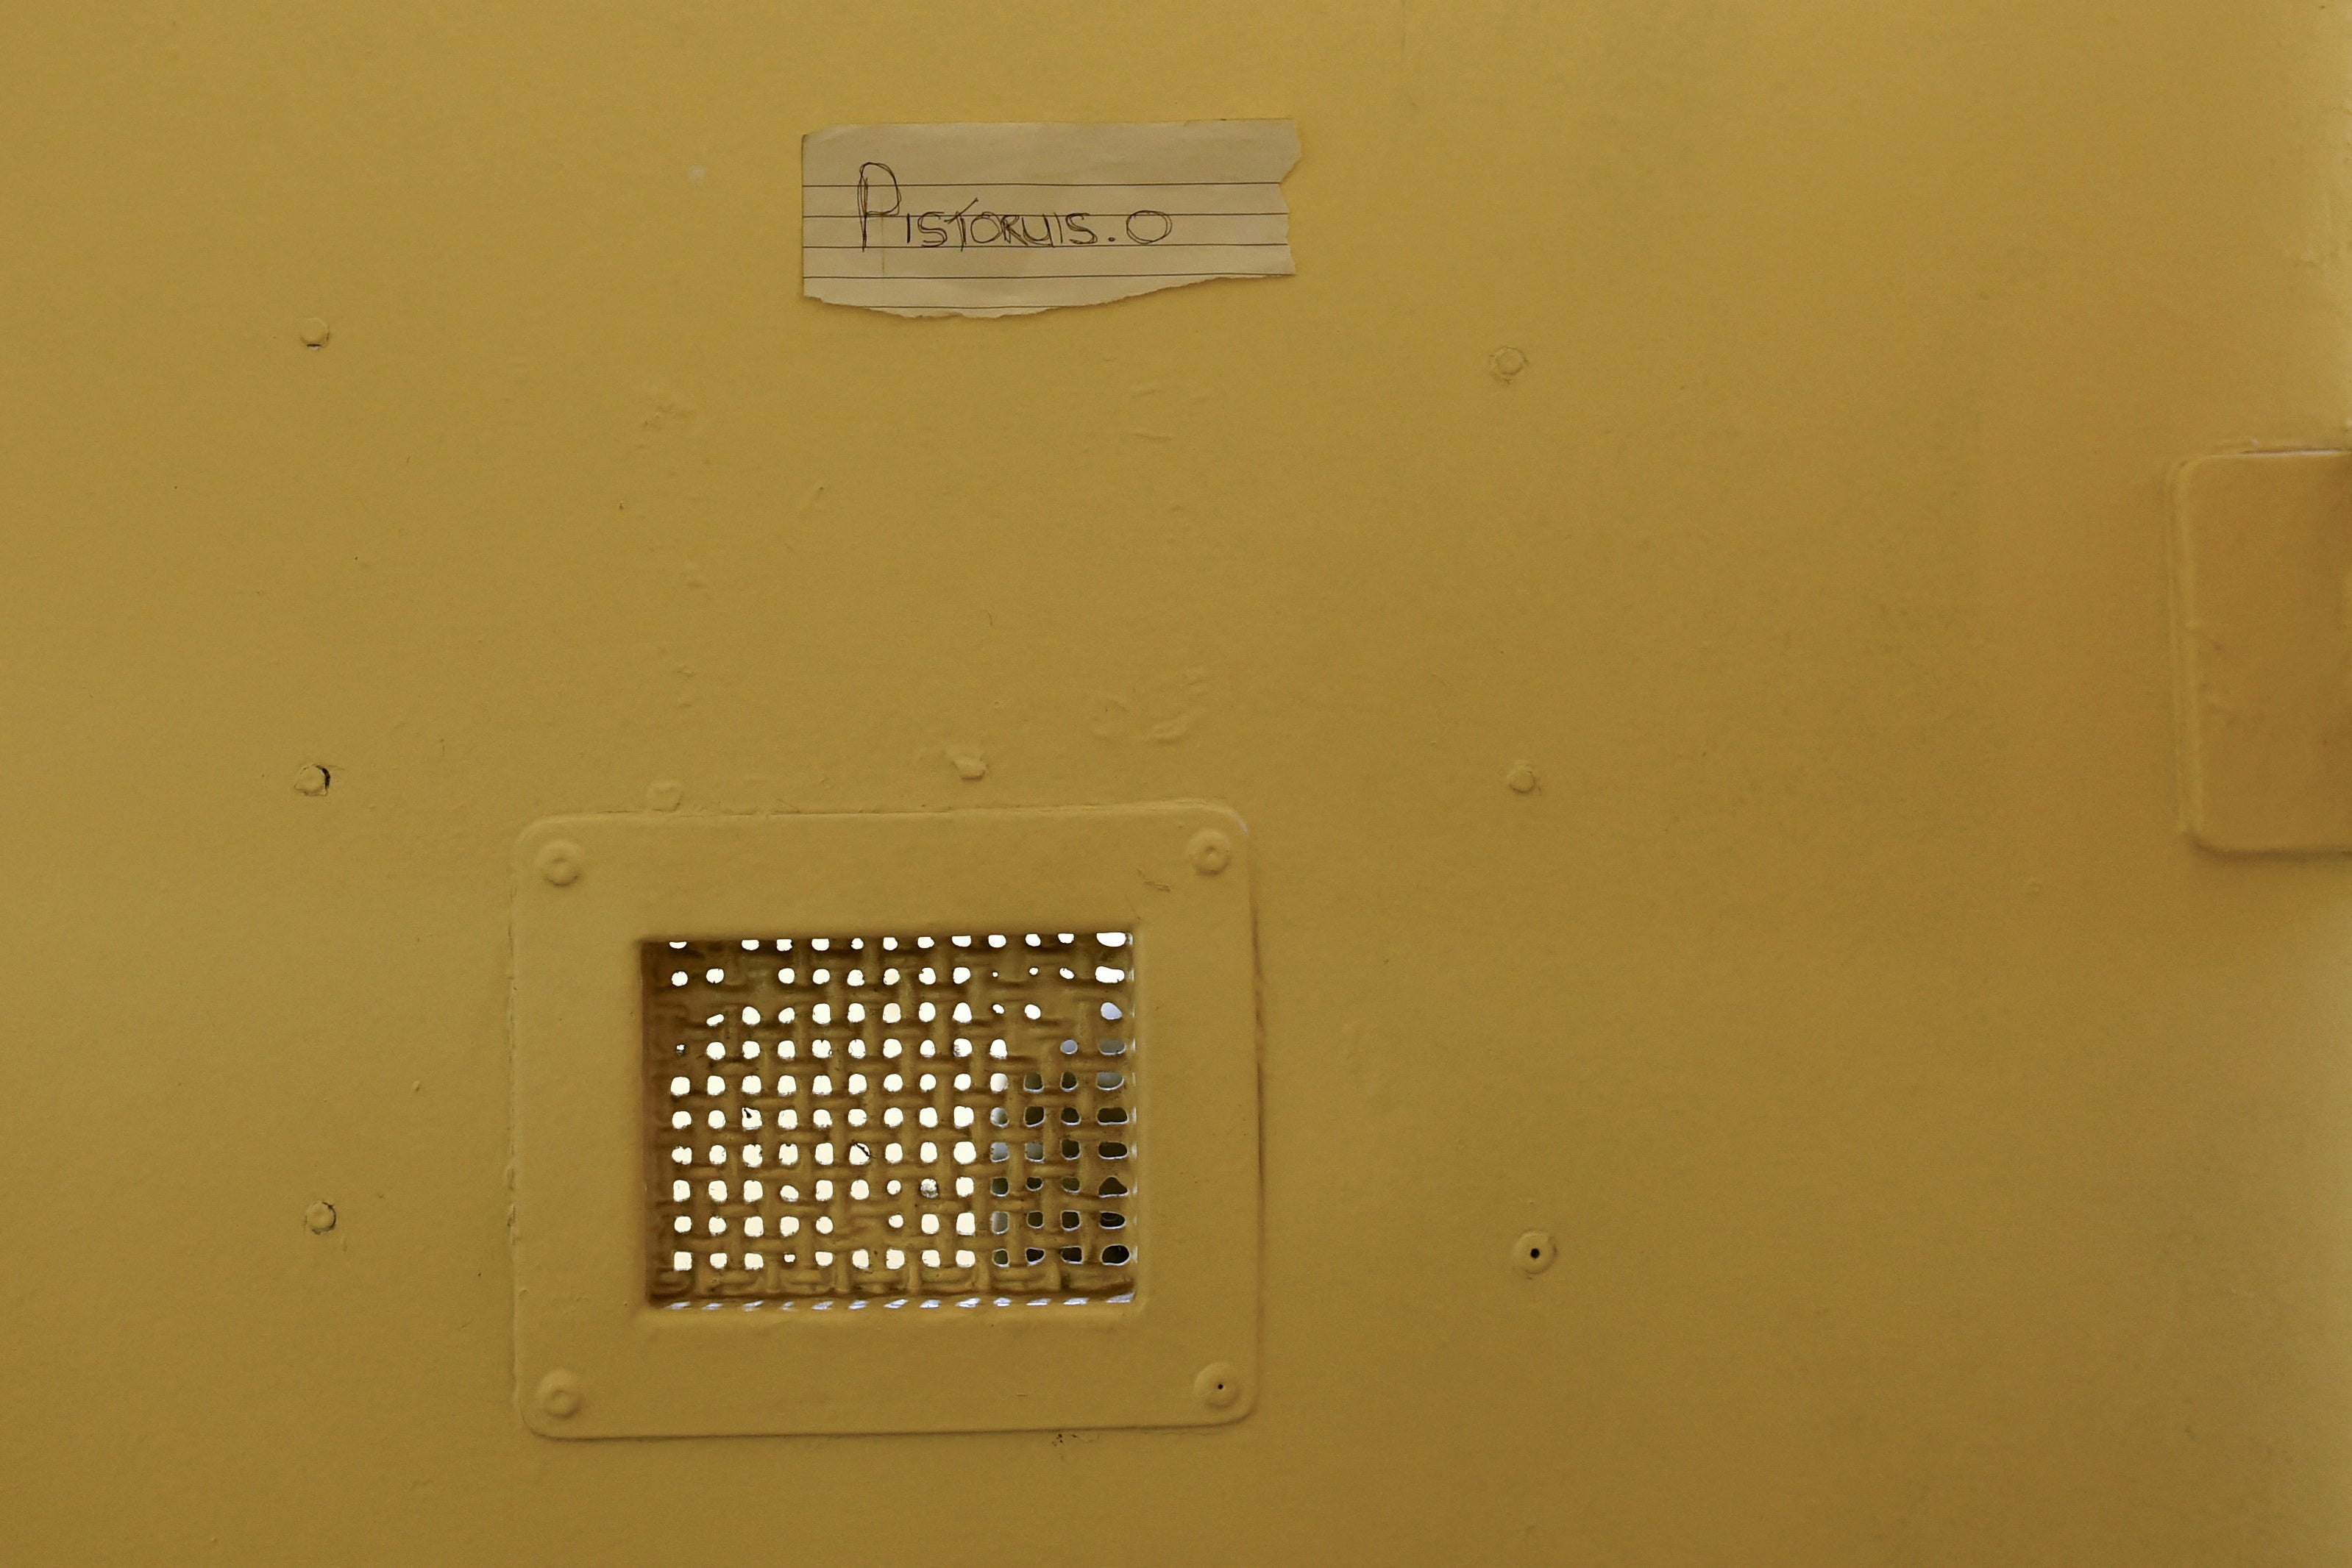 A handwritten and misspelt ‘Pistoruis. O’ is stuck to his cell door